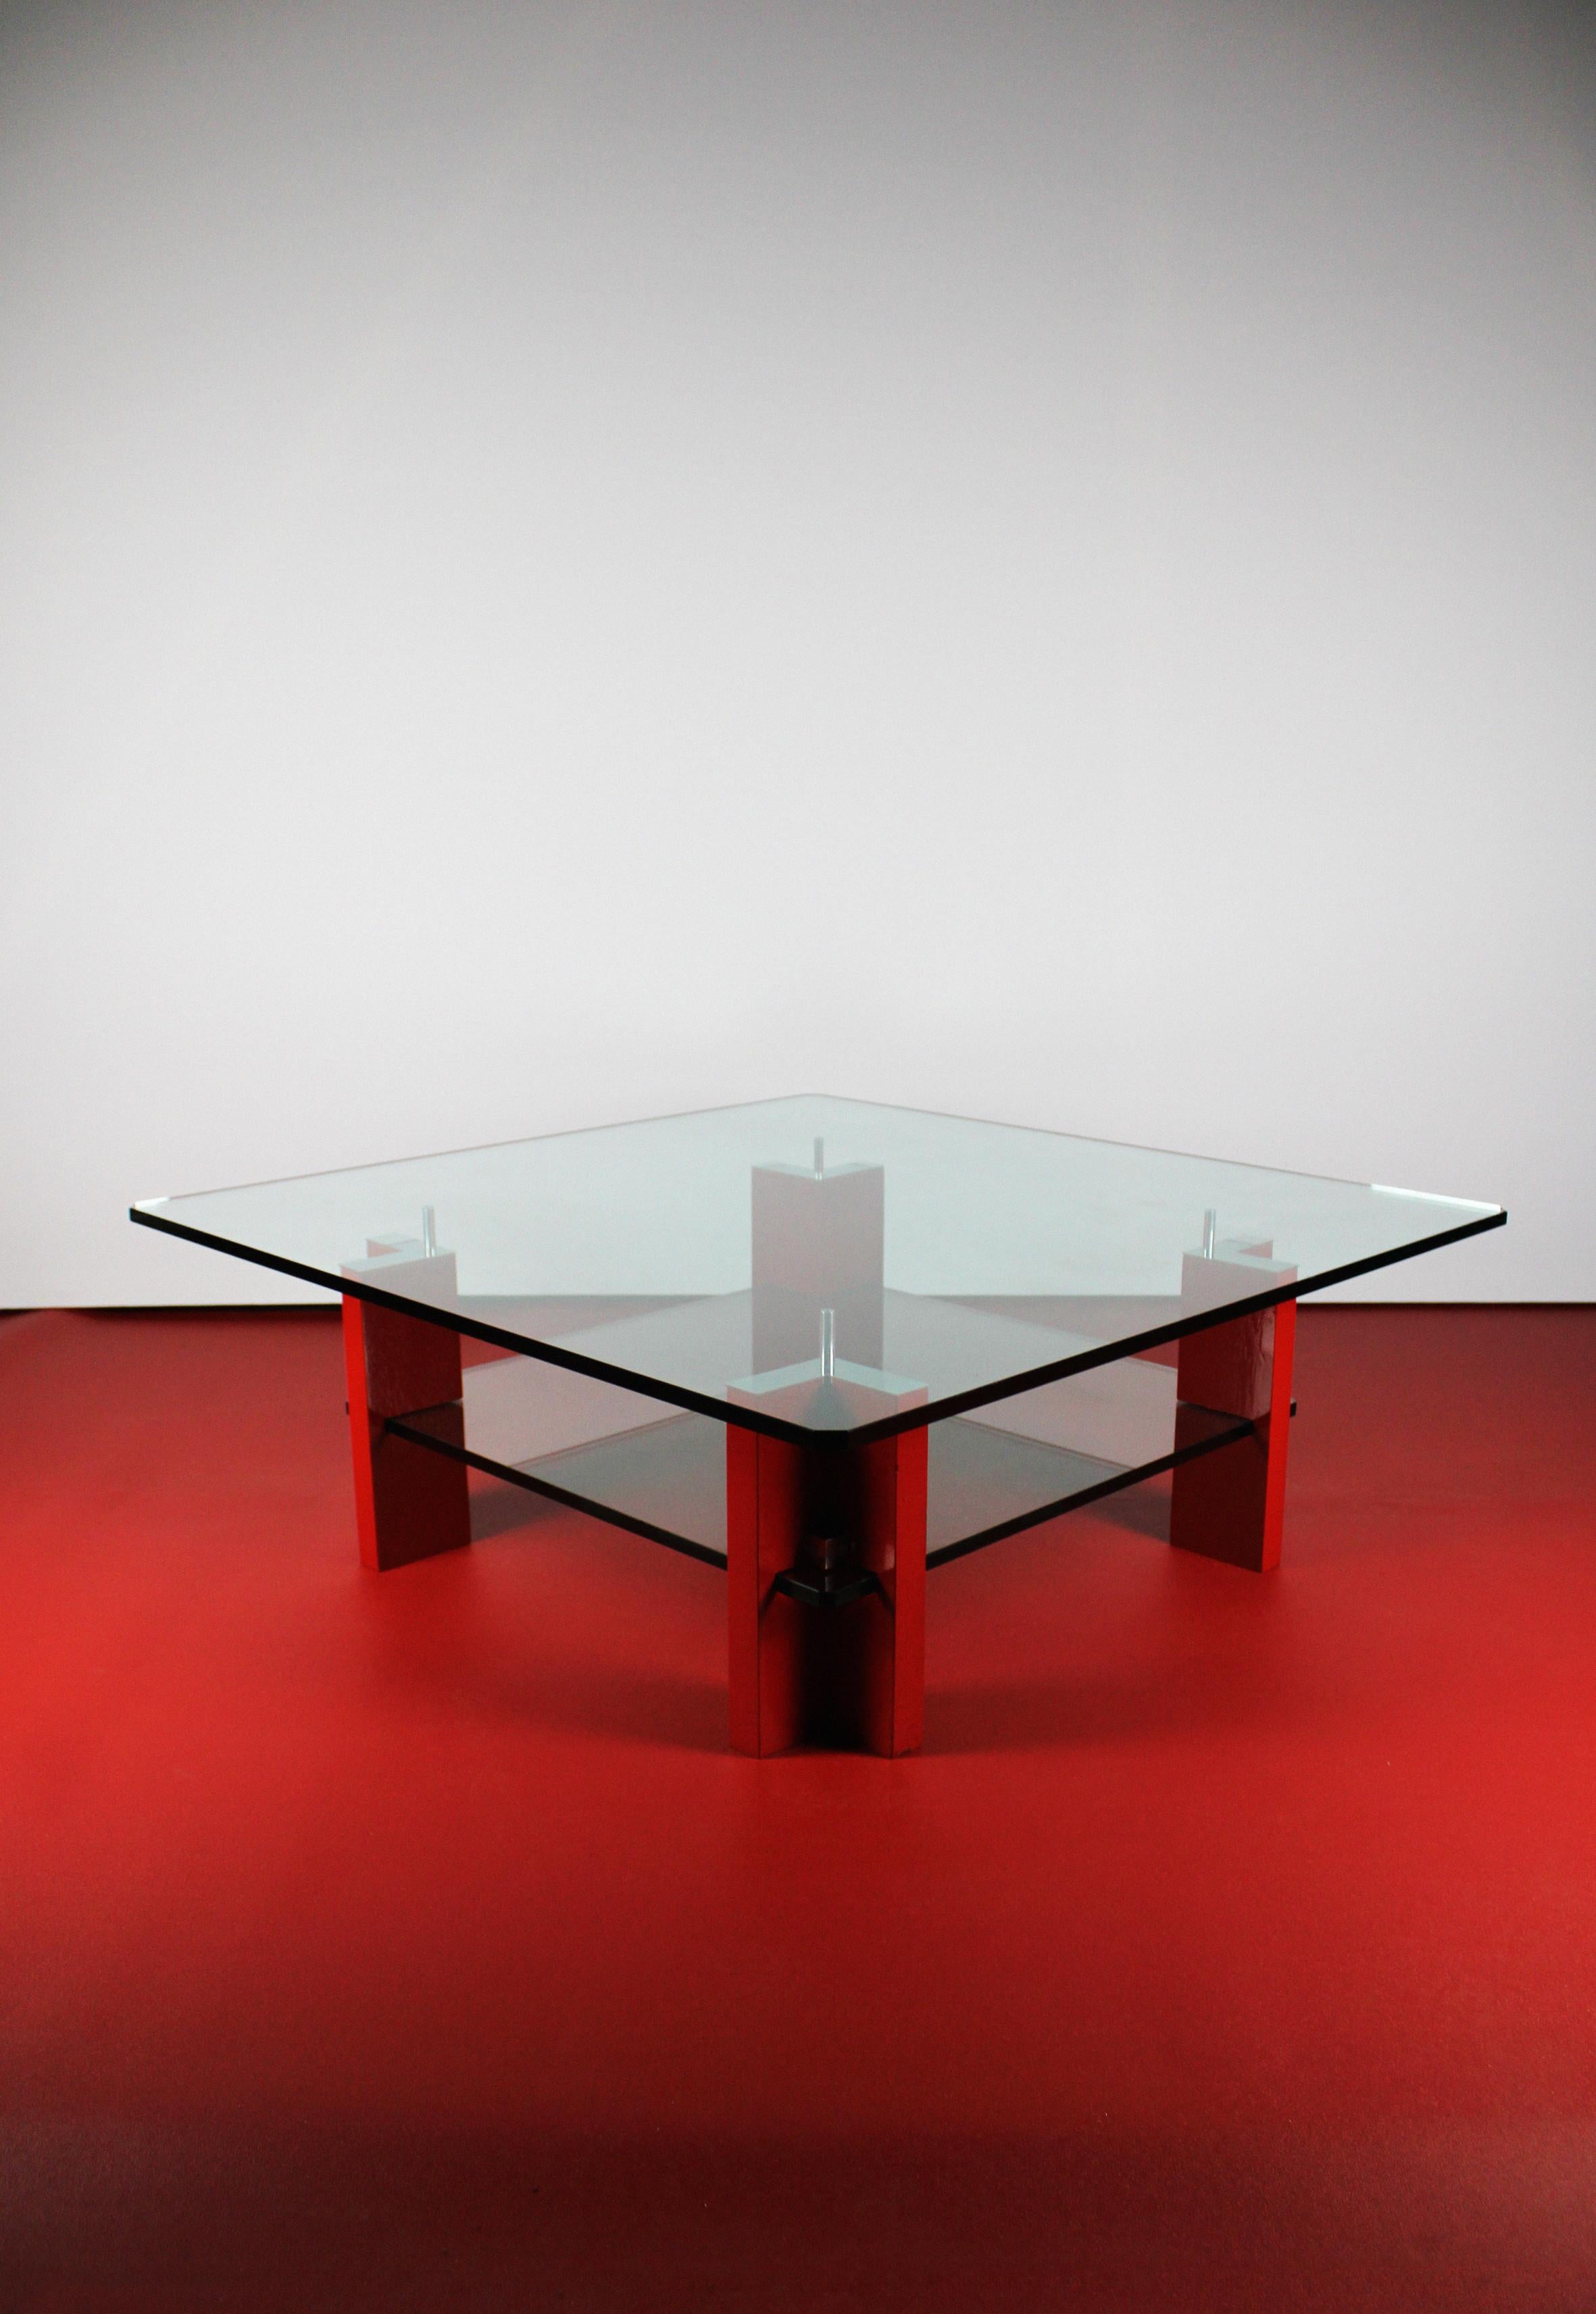 Nous vous présentons la table basse Peter Ghyczy T 57 D, une table basse moderne originale qui constitue une création rare, dont il n'existe que quelques versions. L'esthétique intemporelle est obtenue grâce à la combinaison unique du verre fumé et